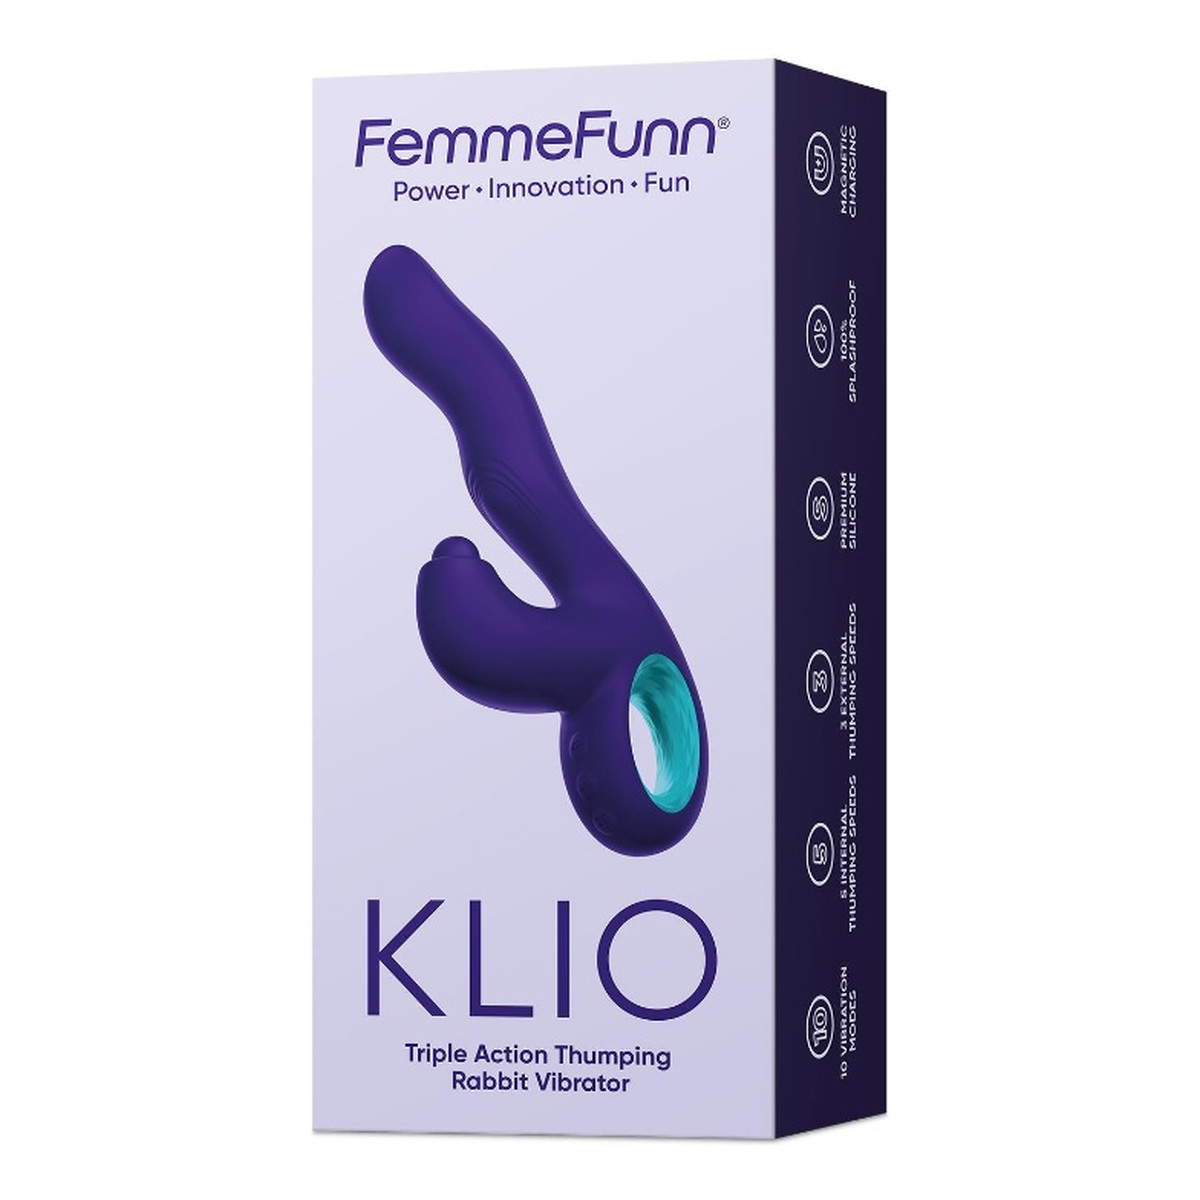 FemmeFunn Klio potrójny wibrator typu króliczek dark purple